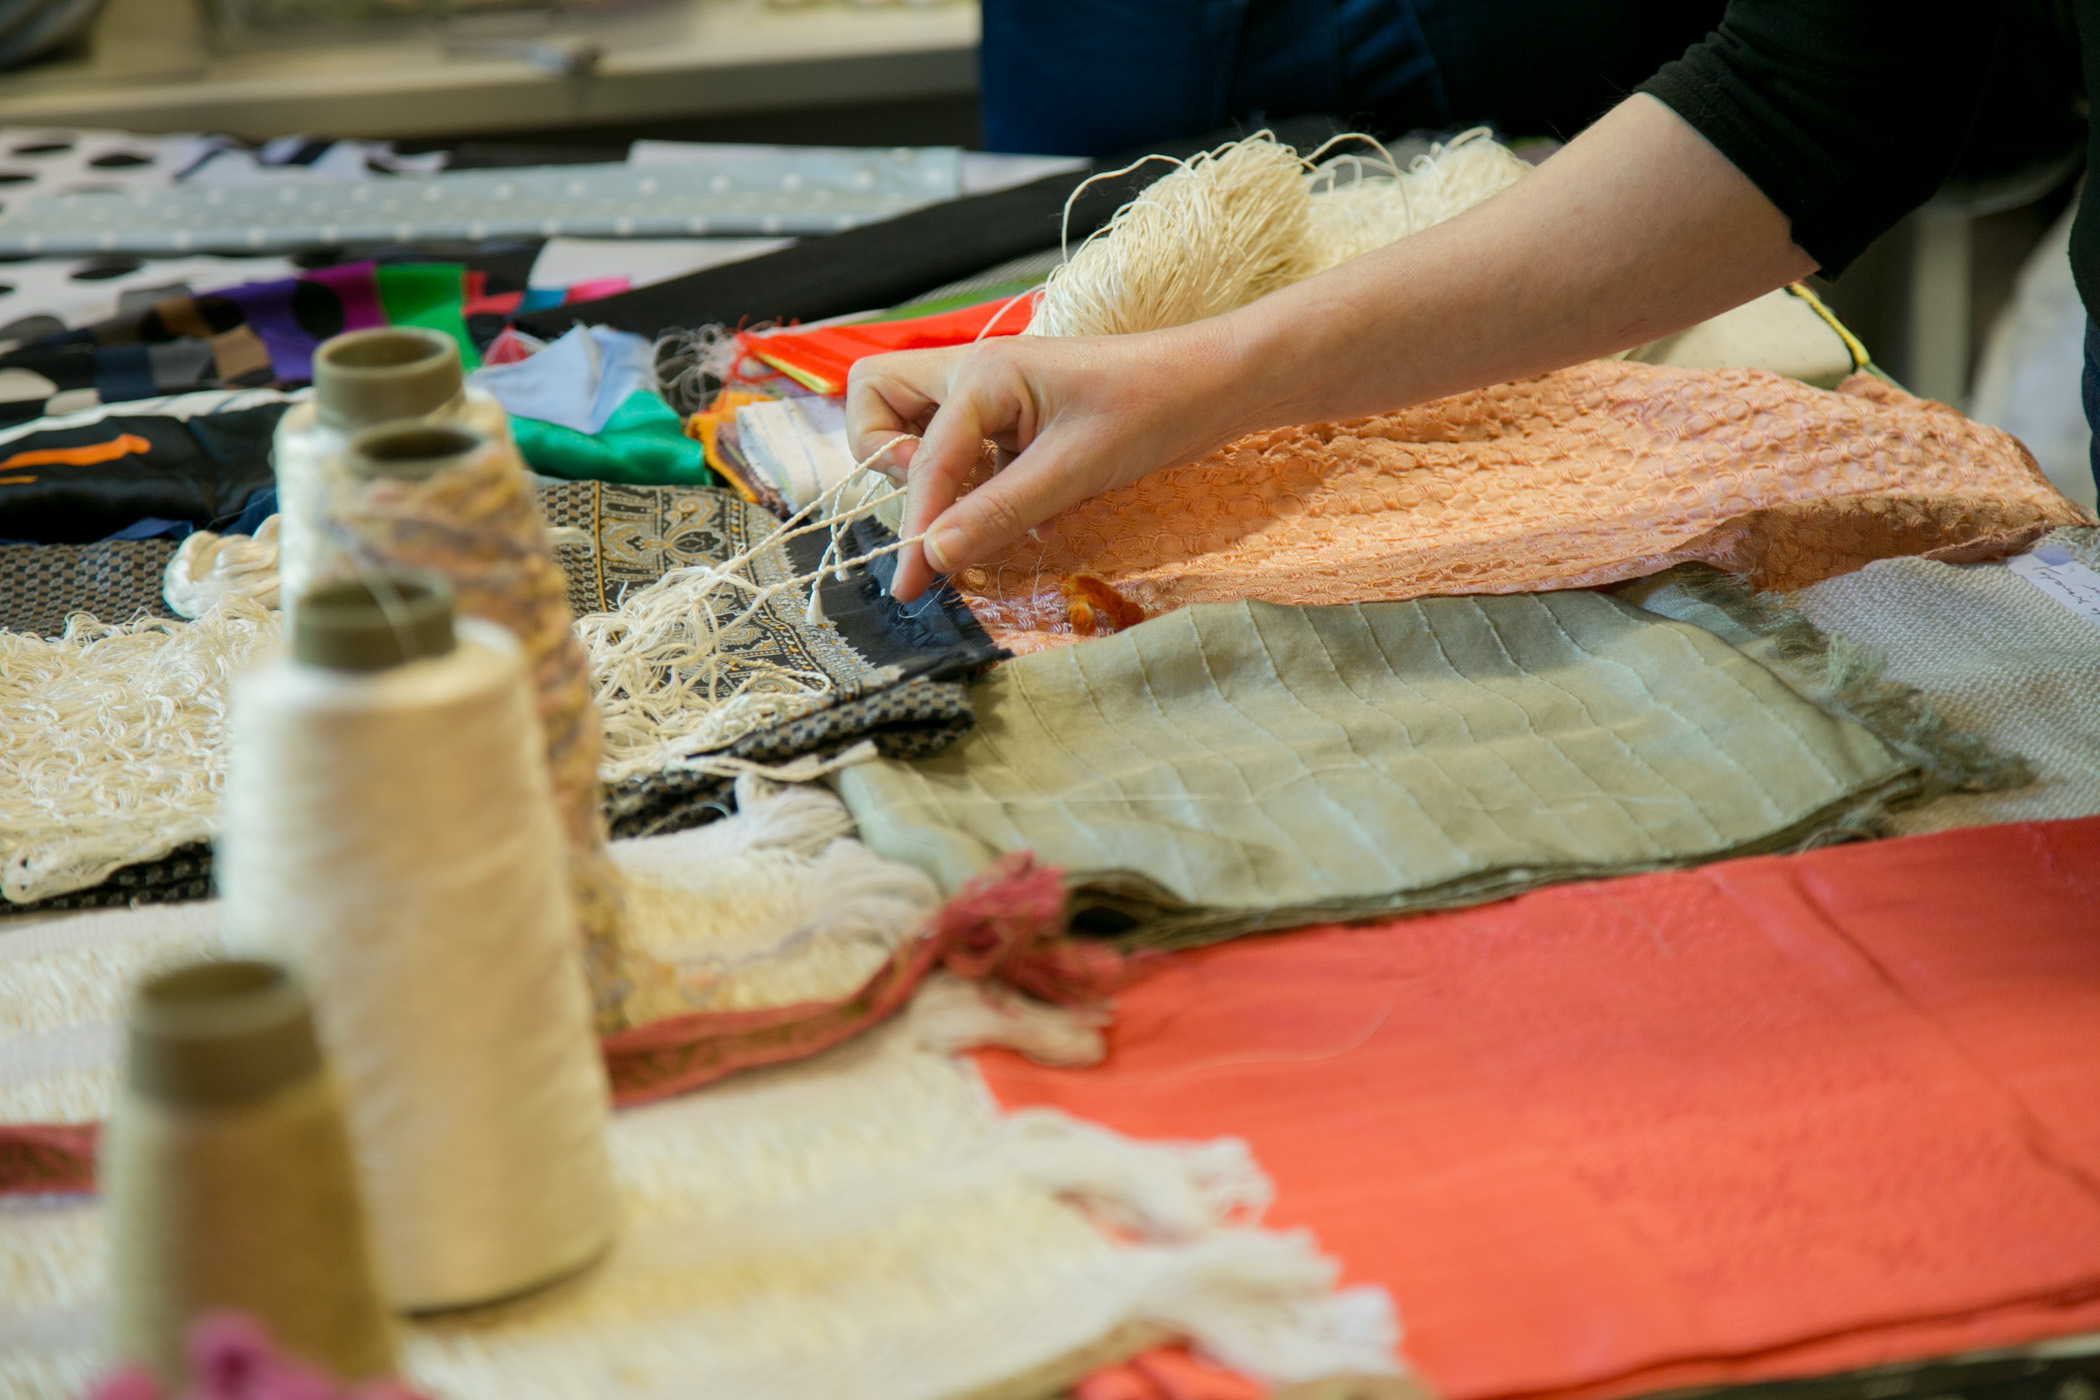 Exhibición sobre seda arte y tecnología, 1° Workshop Internacional de la Seda